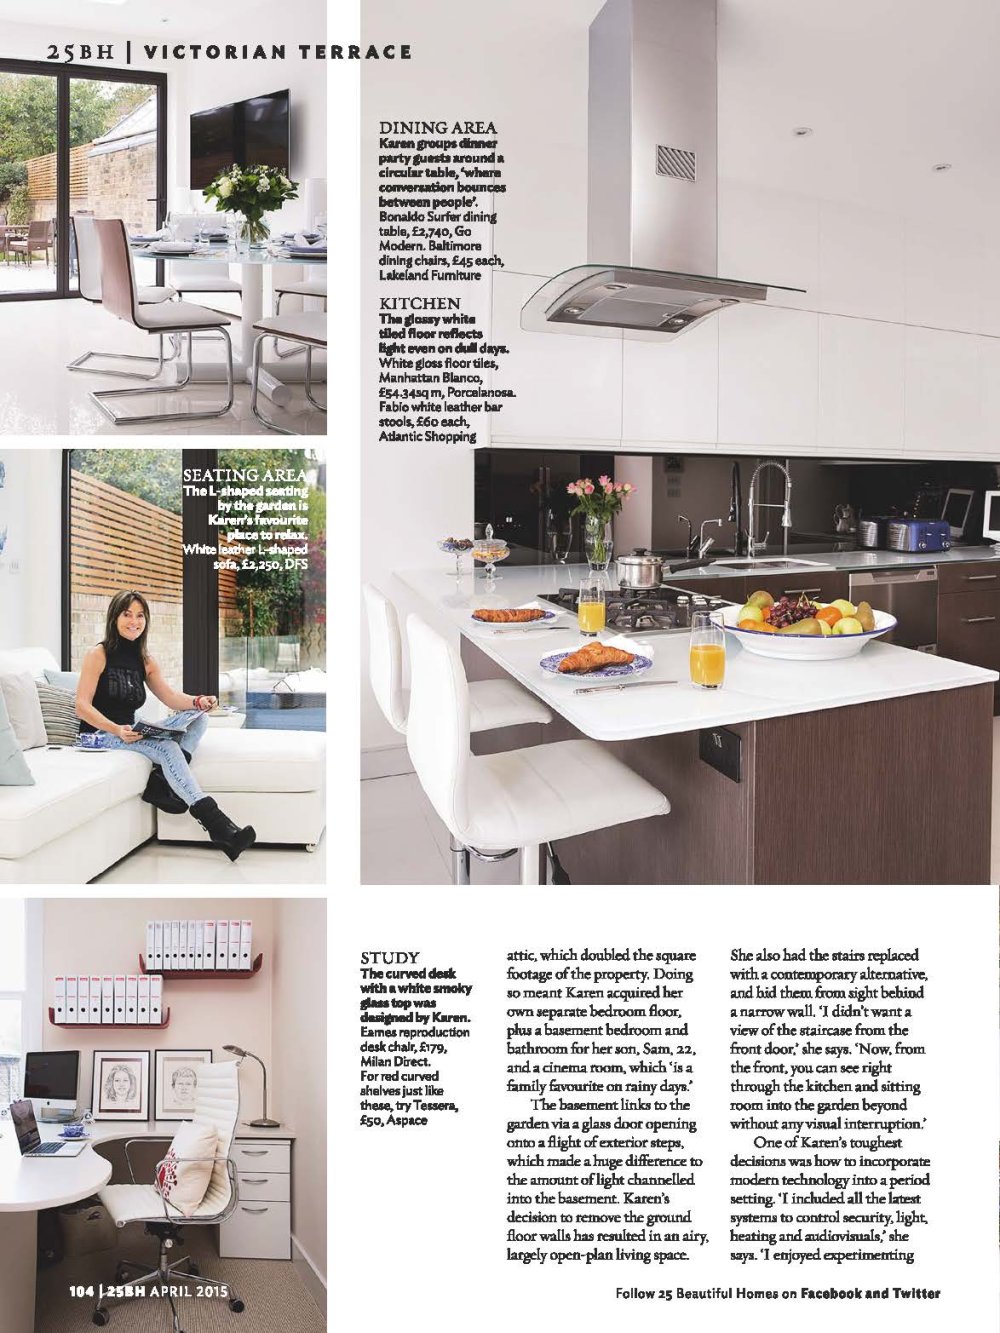 国外杂志201504_25 Beautiful Homes - April 2015_页面_081.jpg